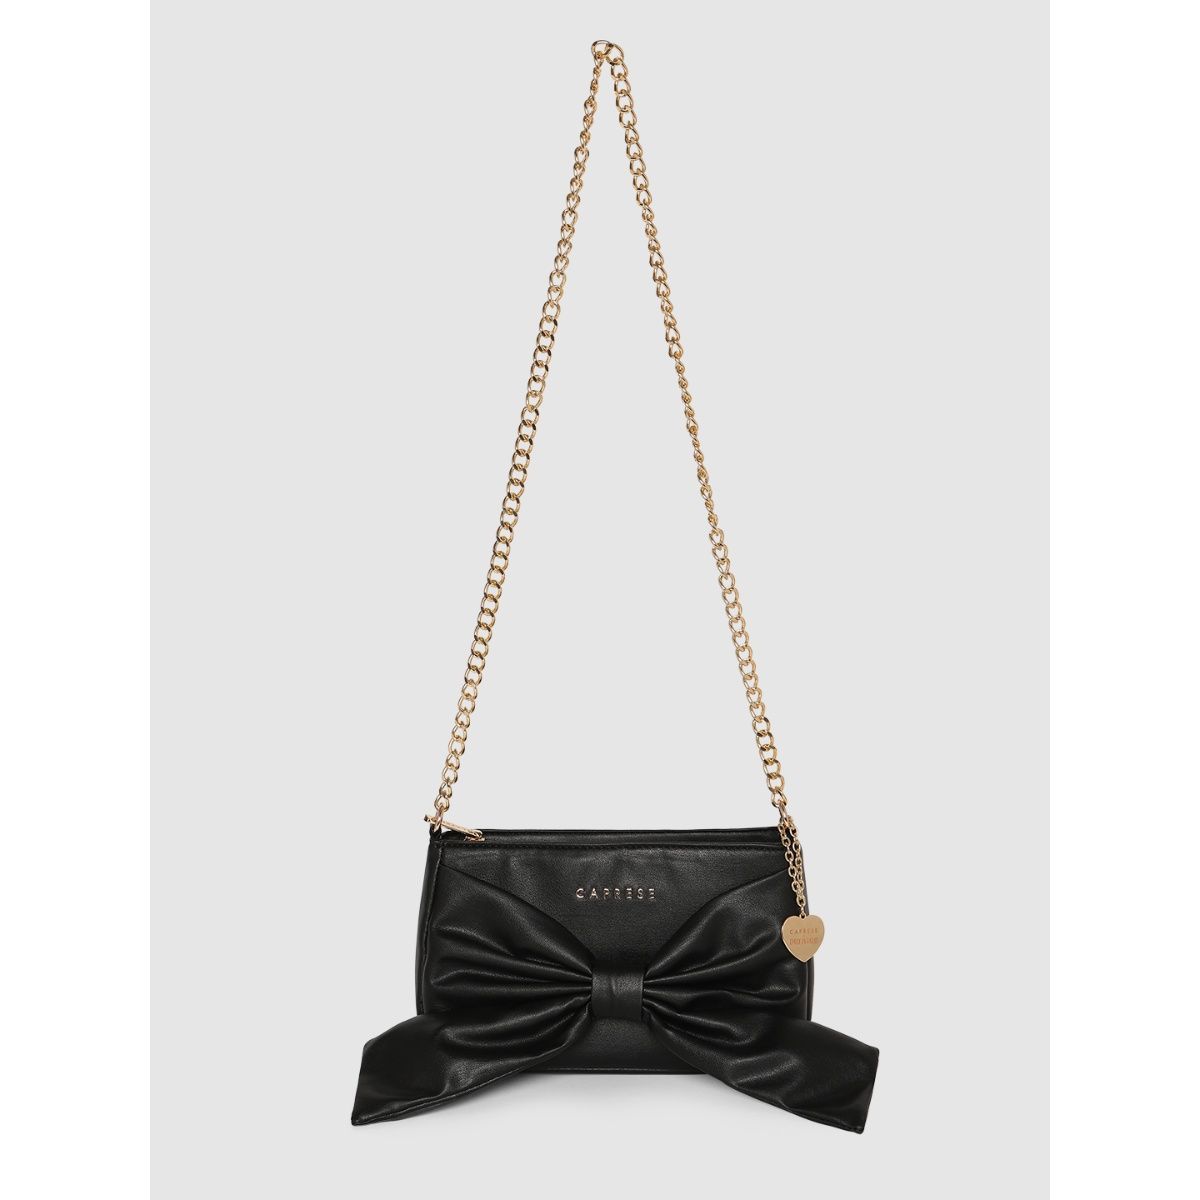 Caprese Emily in Paris Printed Medium Tote Handbag – Caprese Bags